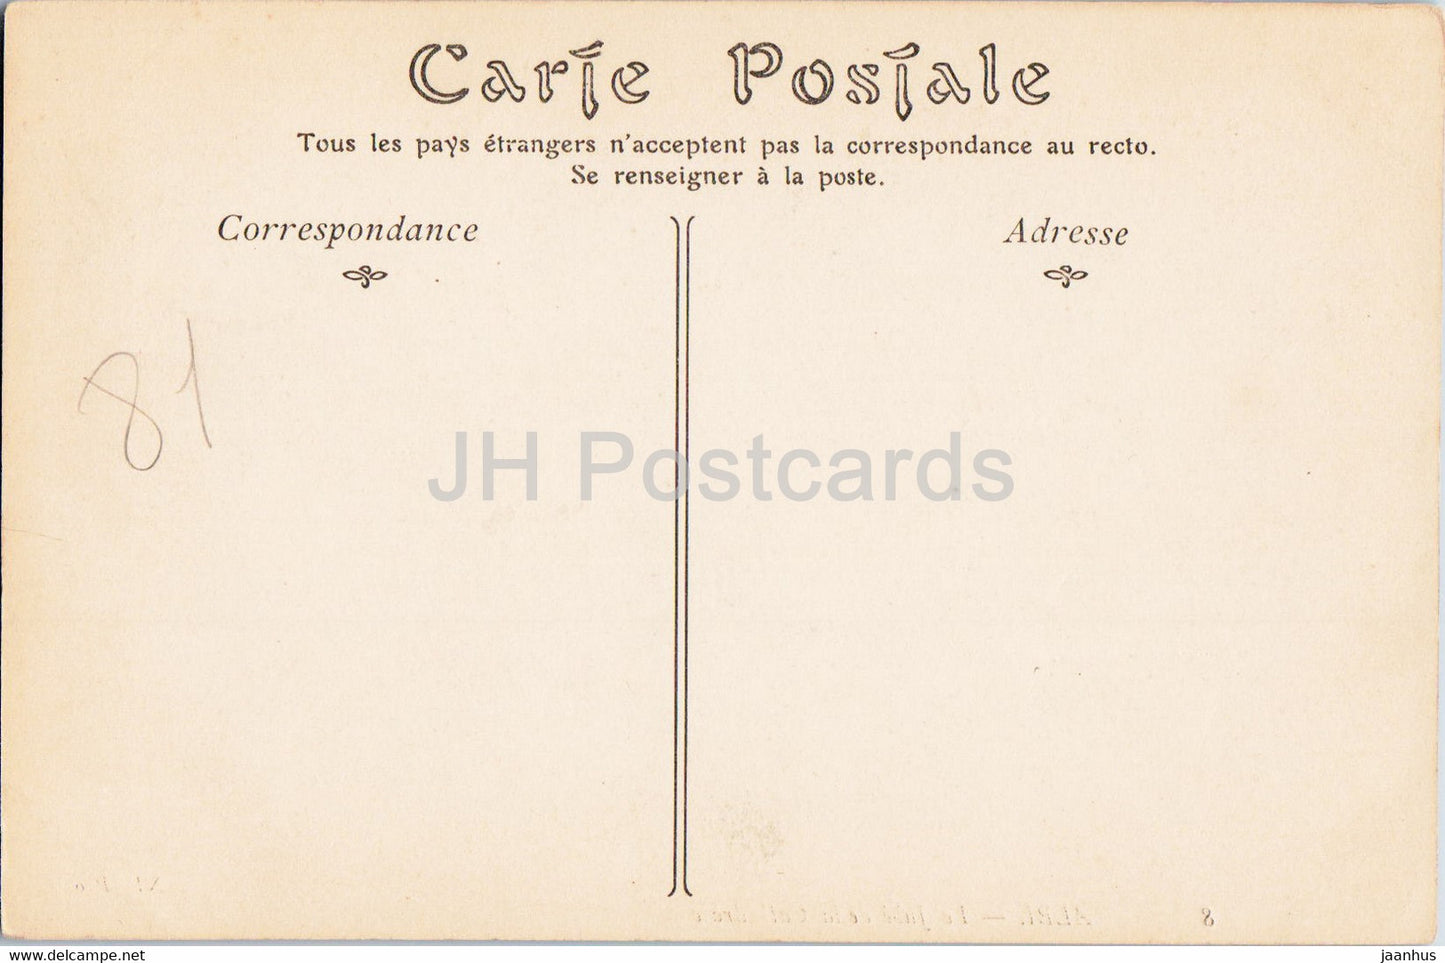 Albi - Le Jube de La Cathédrale - 8 - cathédrale - carte postale ancienne - France - inutilisée